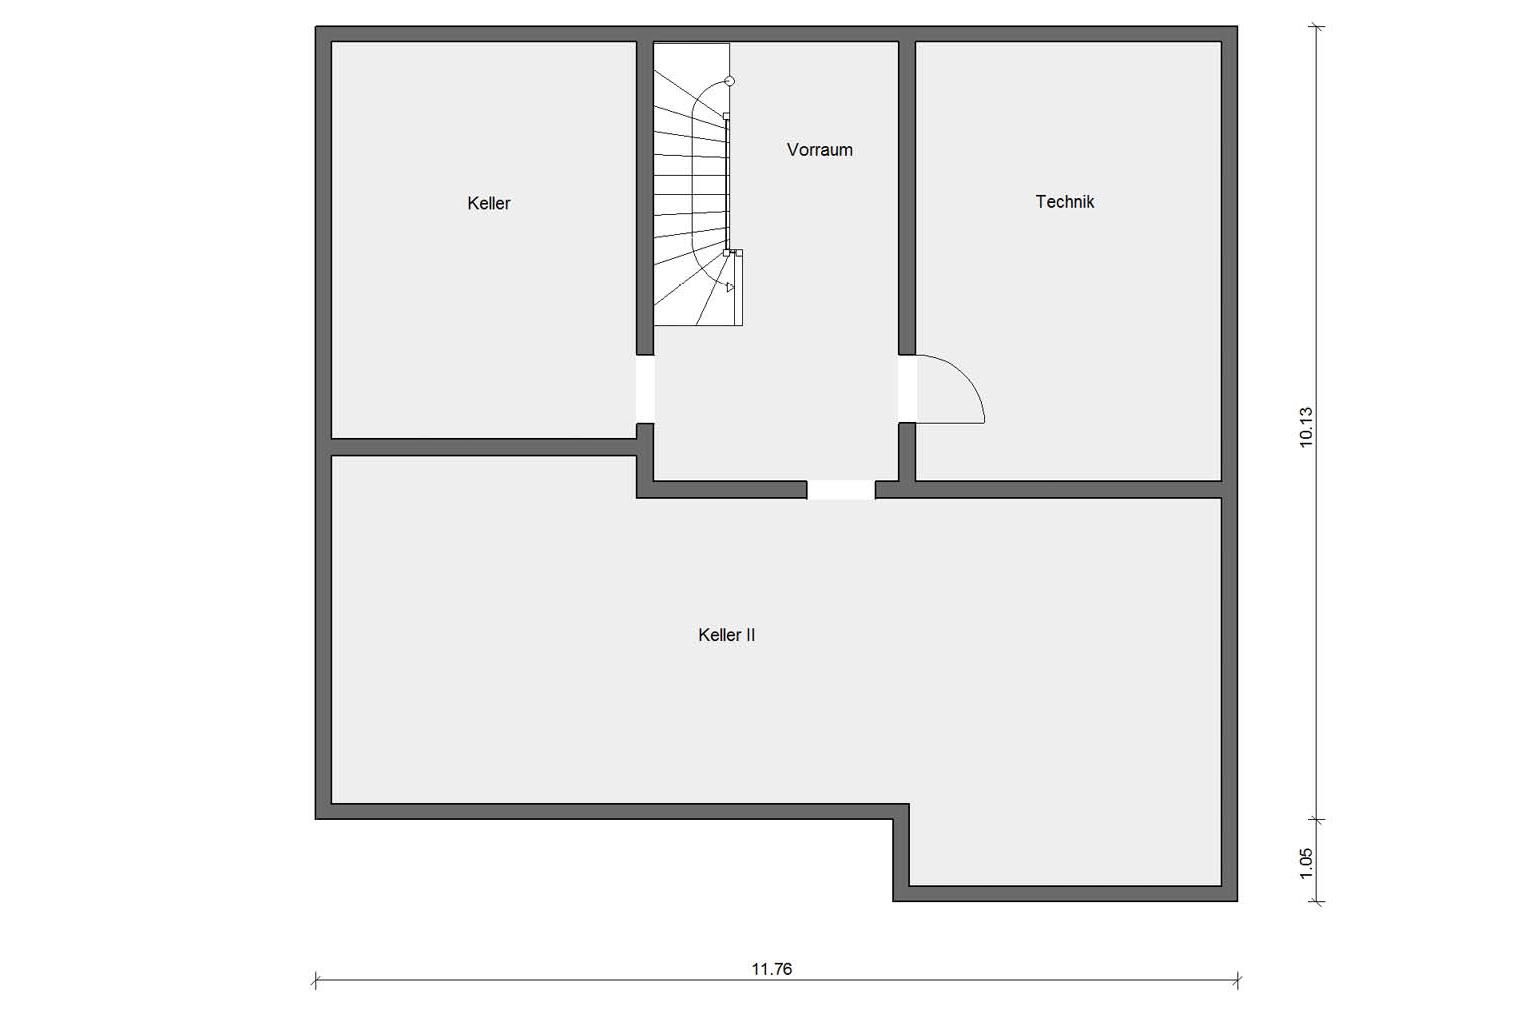 Pianta seminterrato E 15-197.2 Moderna casa prefabbricata con facciata in clinker